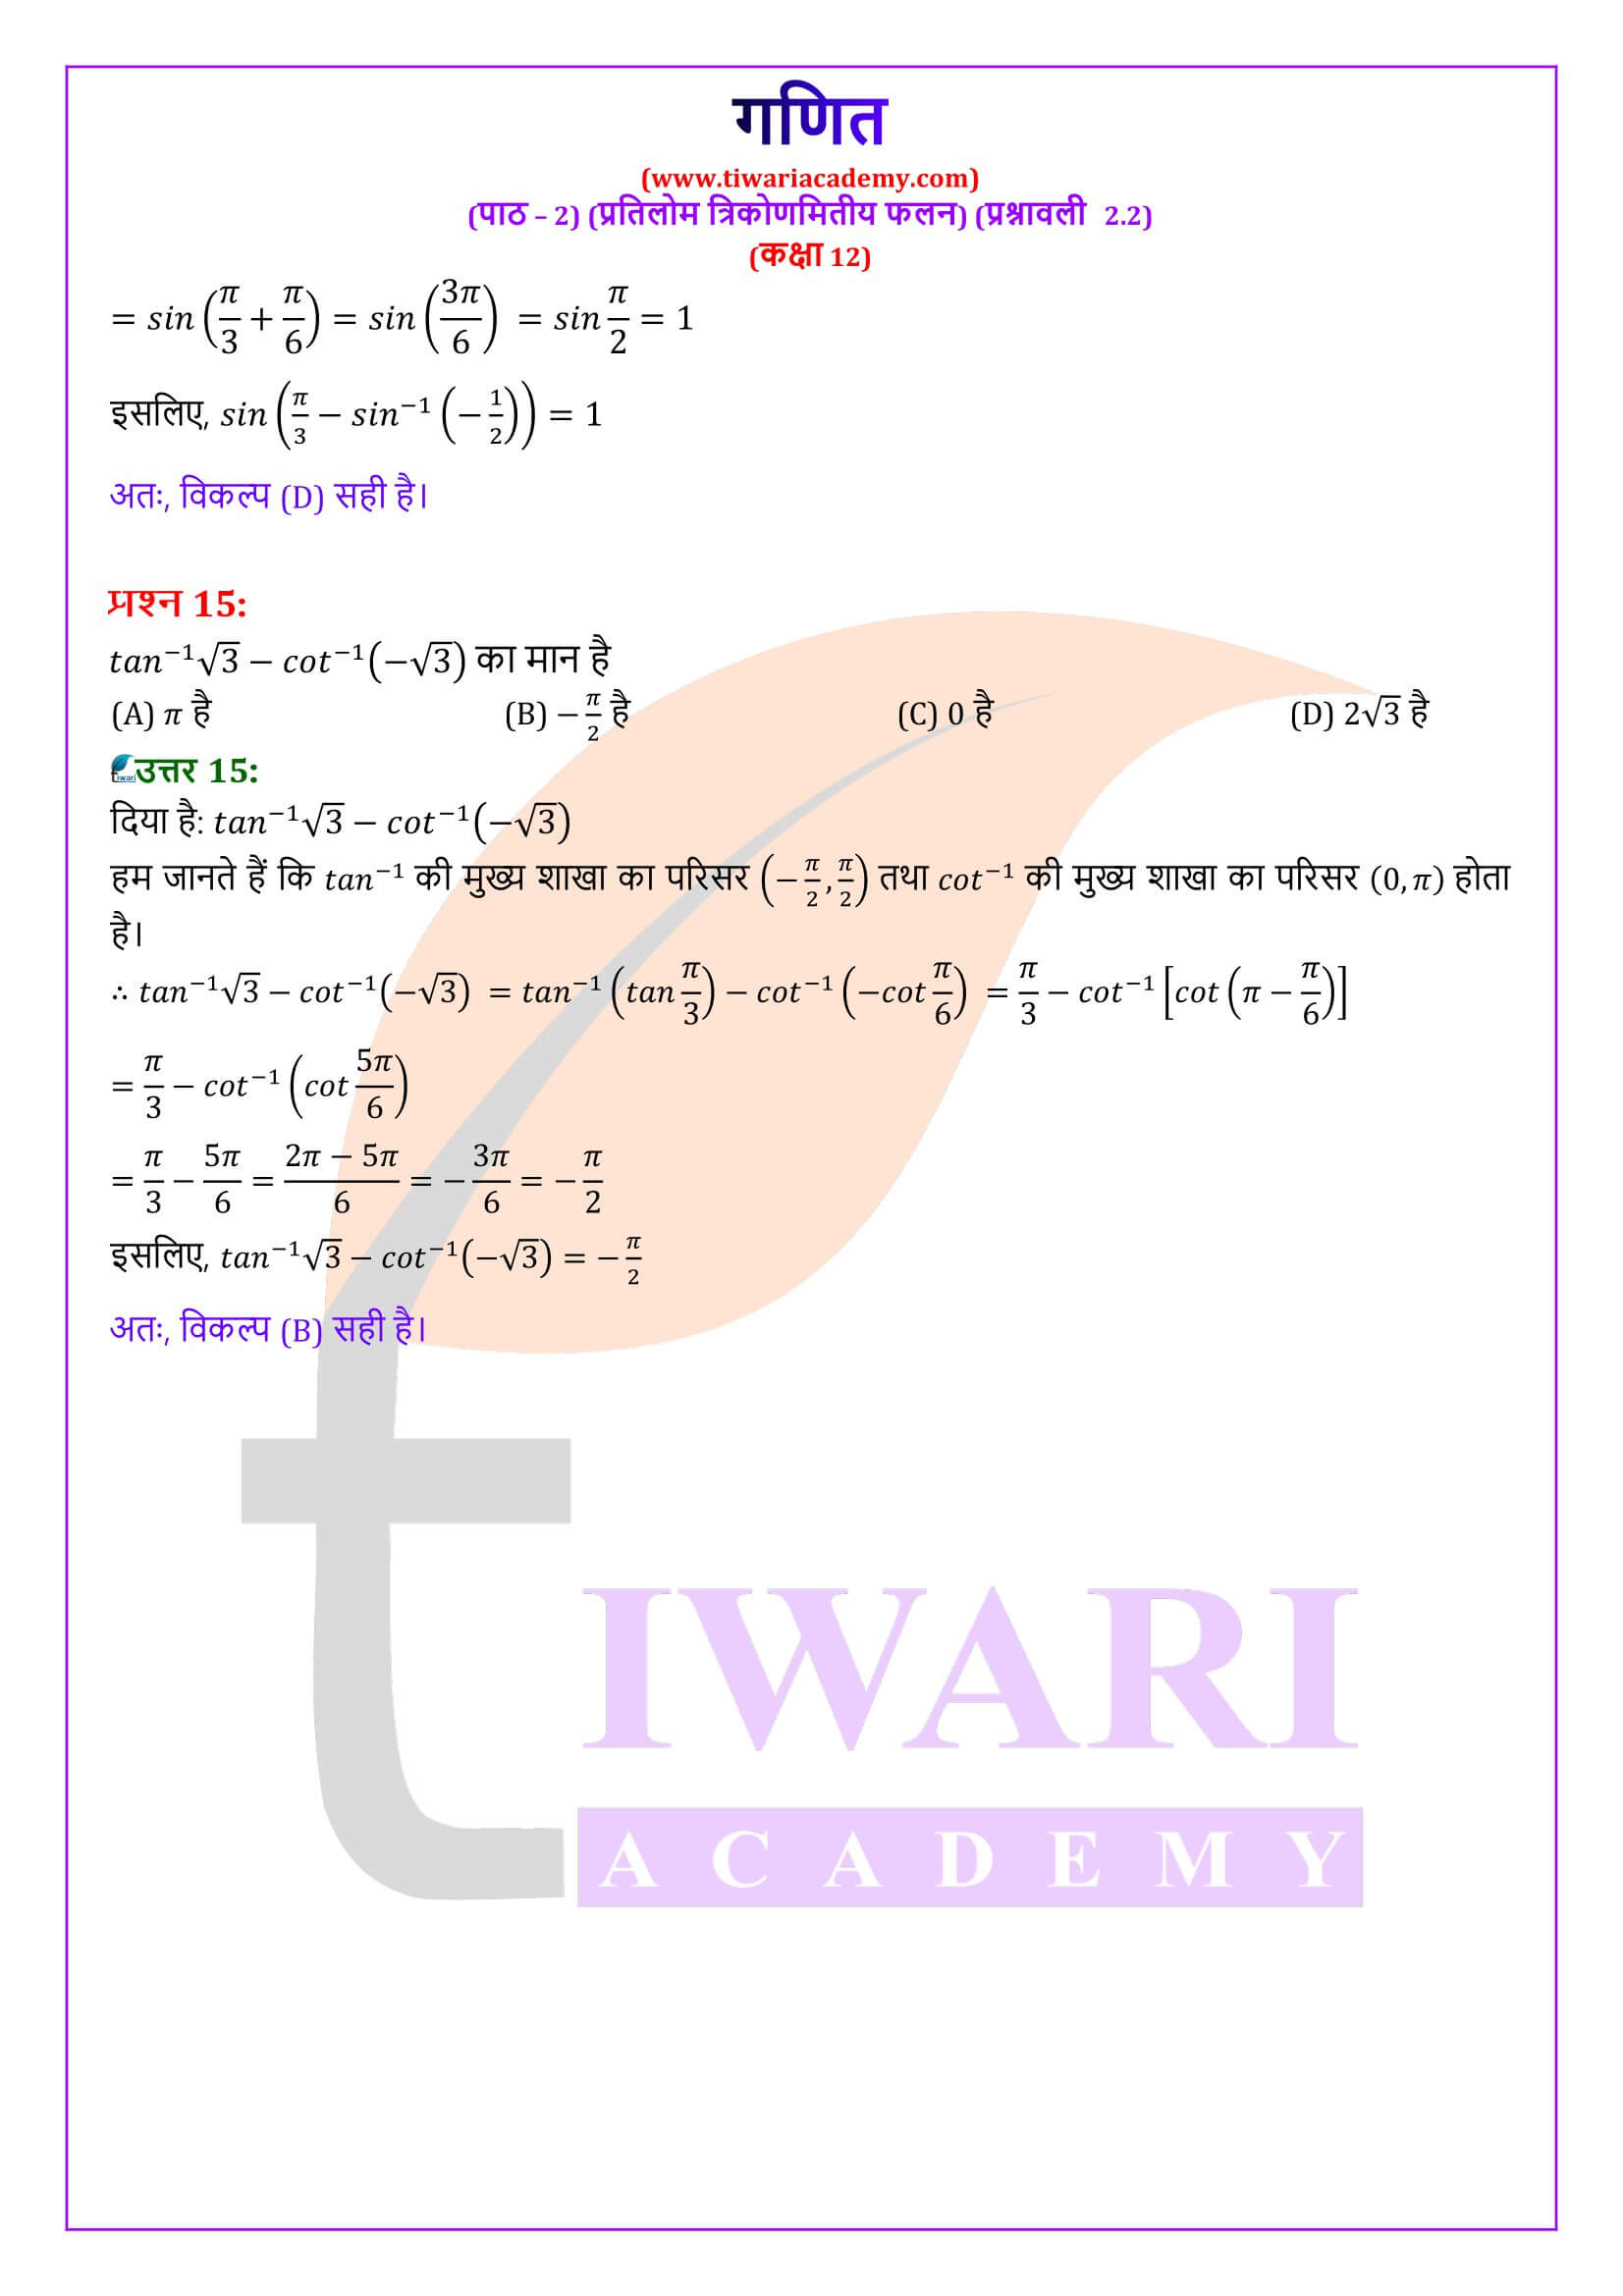 कक्षा 12 गणित अध्याय 2 प्रश्नावली 2.2 एनसीईआरटी समाधान